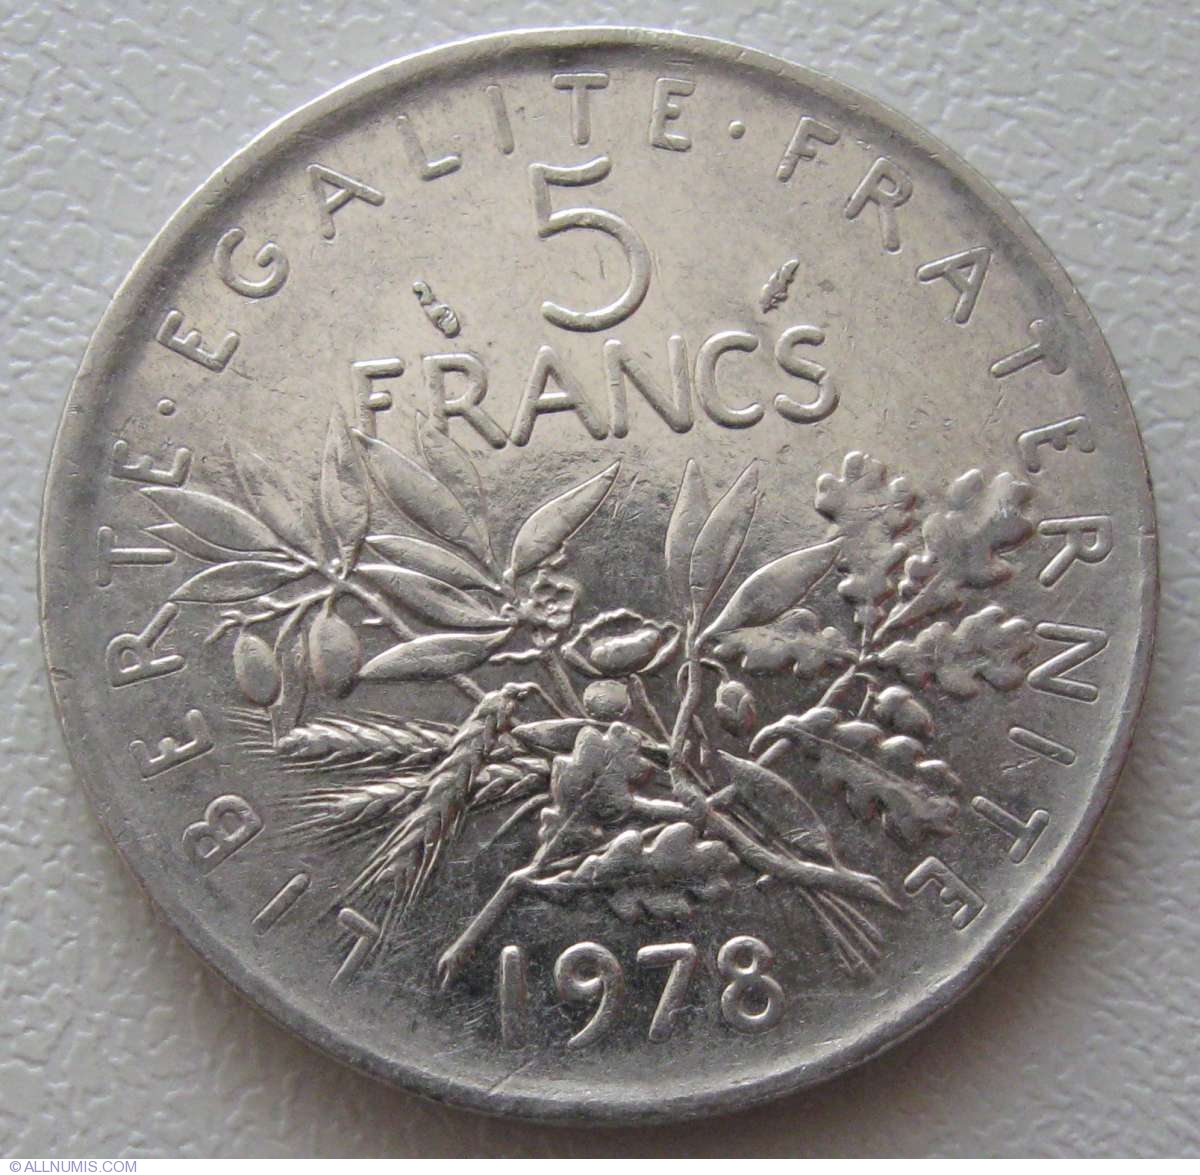 5-francs-1978-fifth-republic-1971-1985-france-coin-935